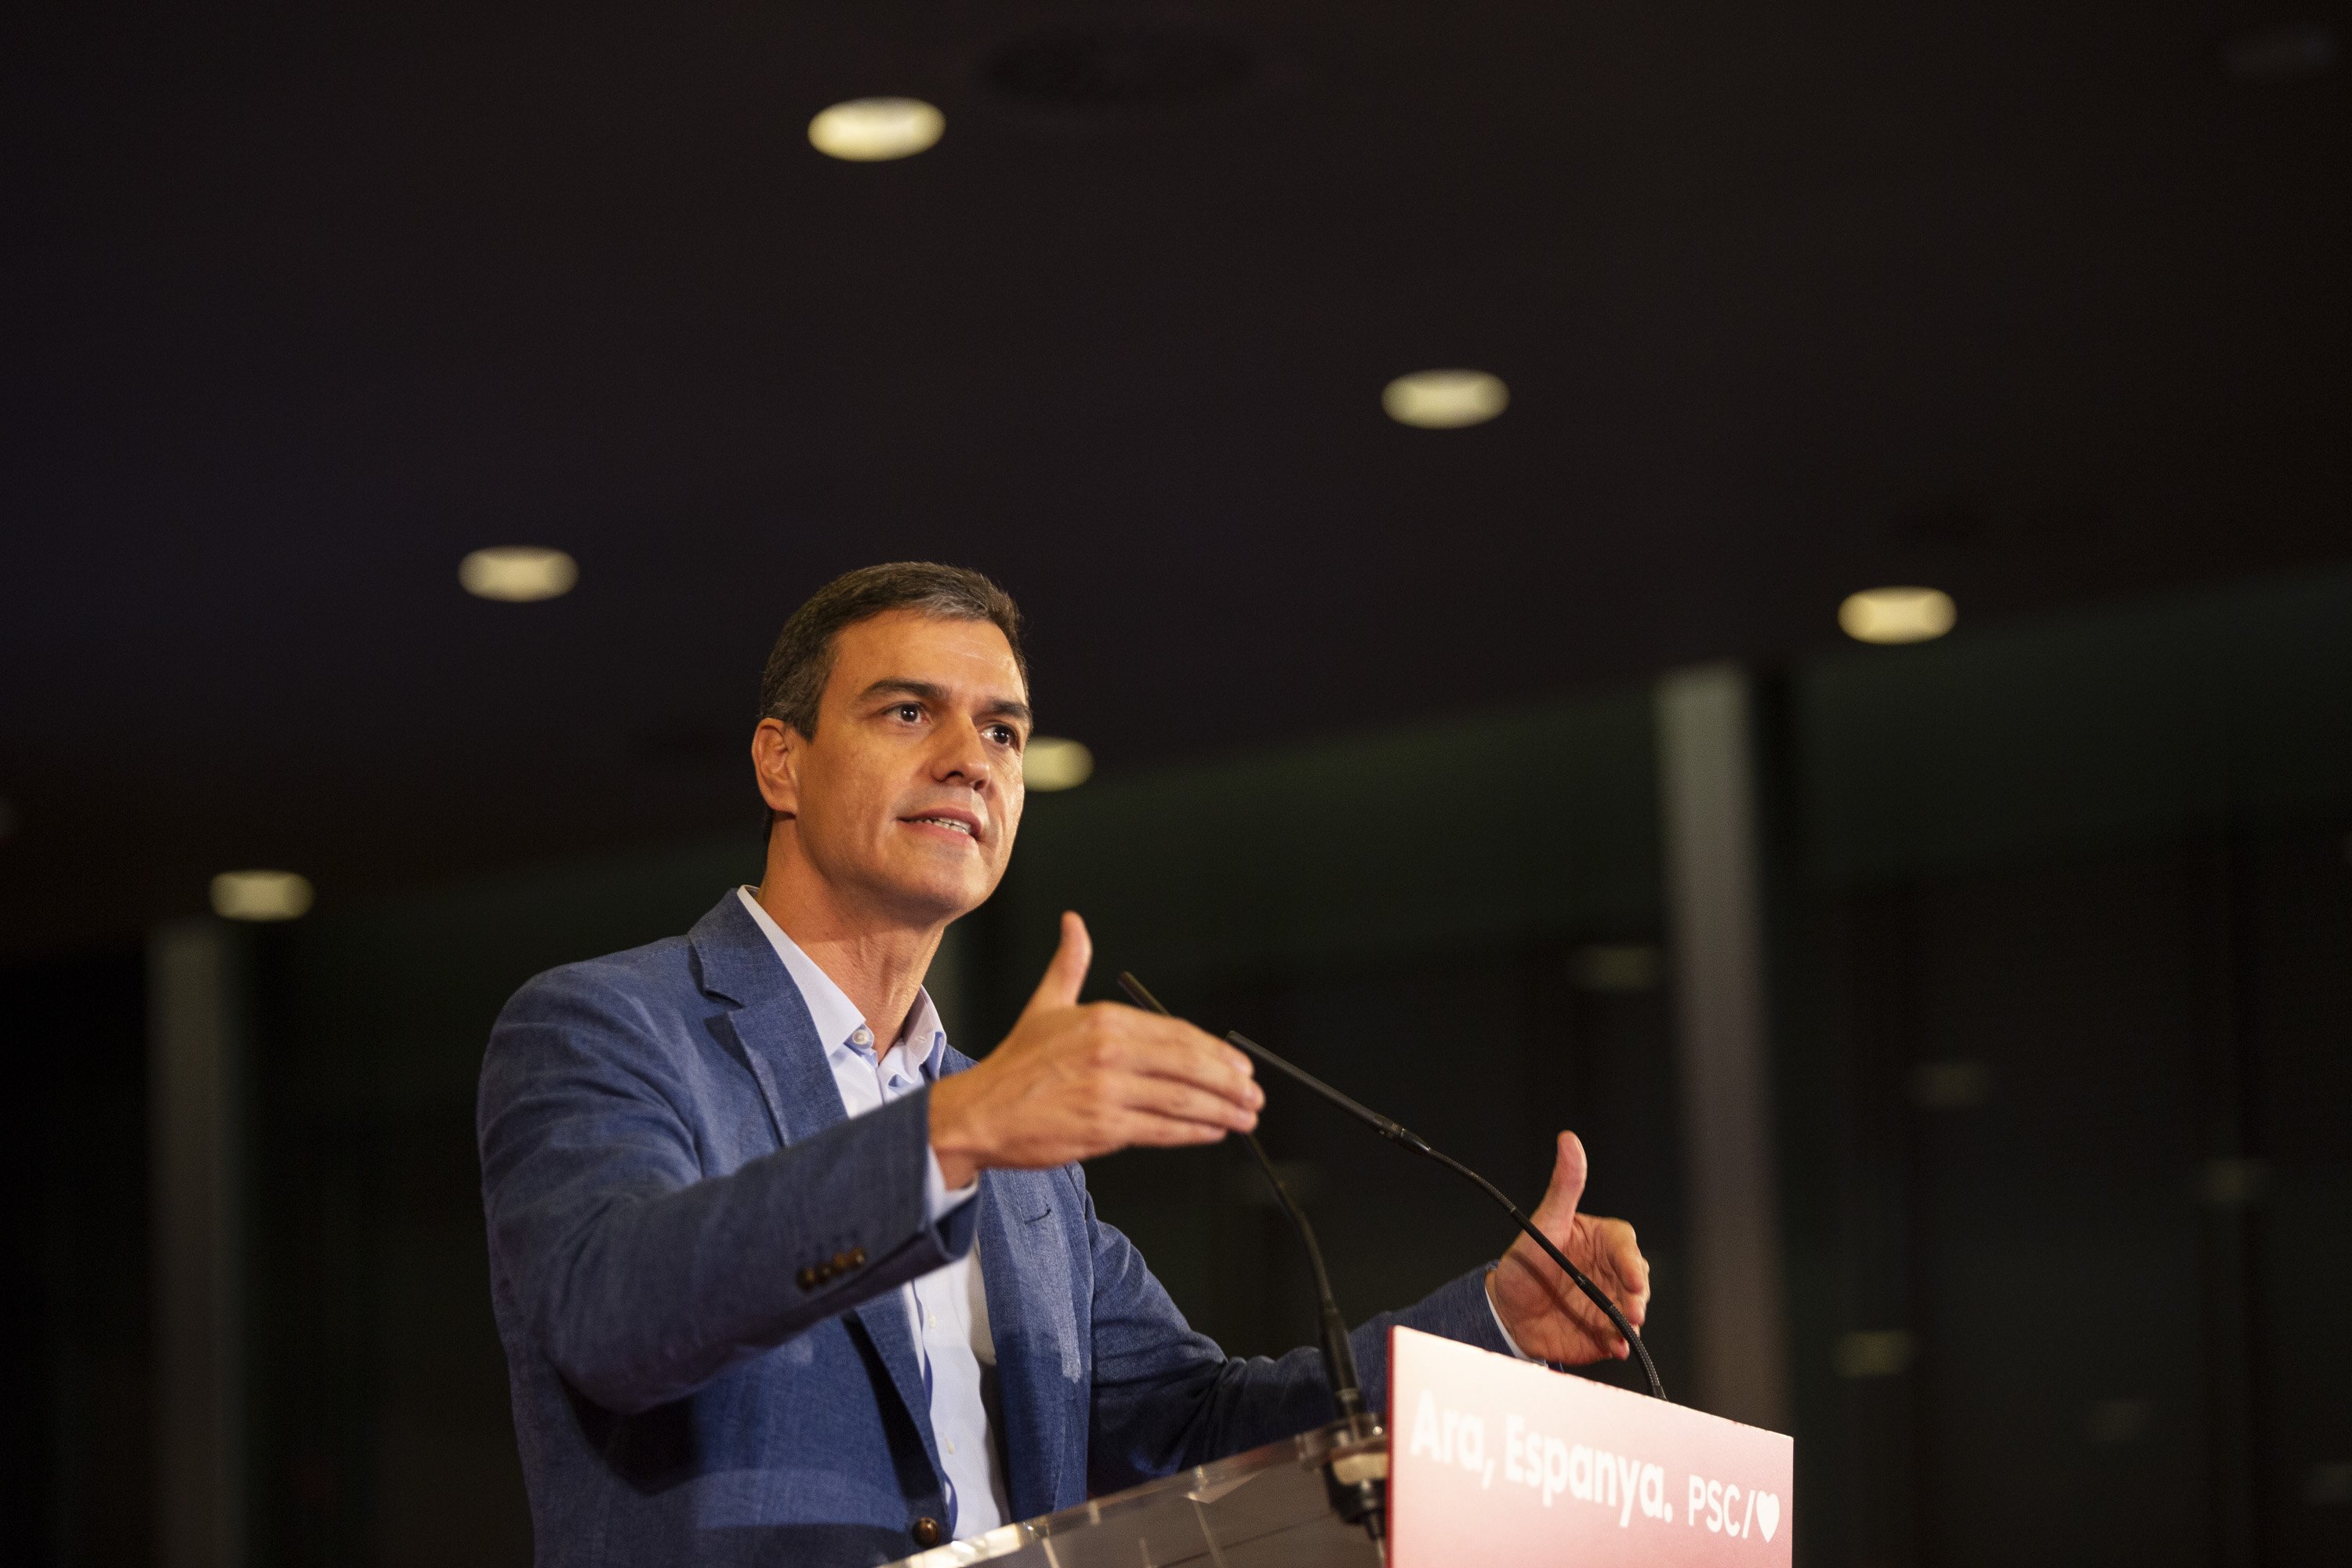 Qui creus que serà el proper president del govern espanyol?